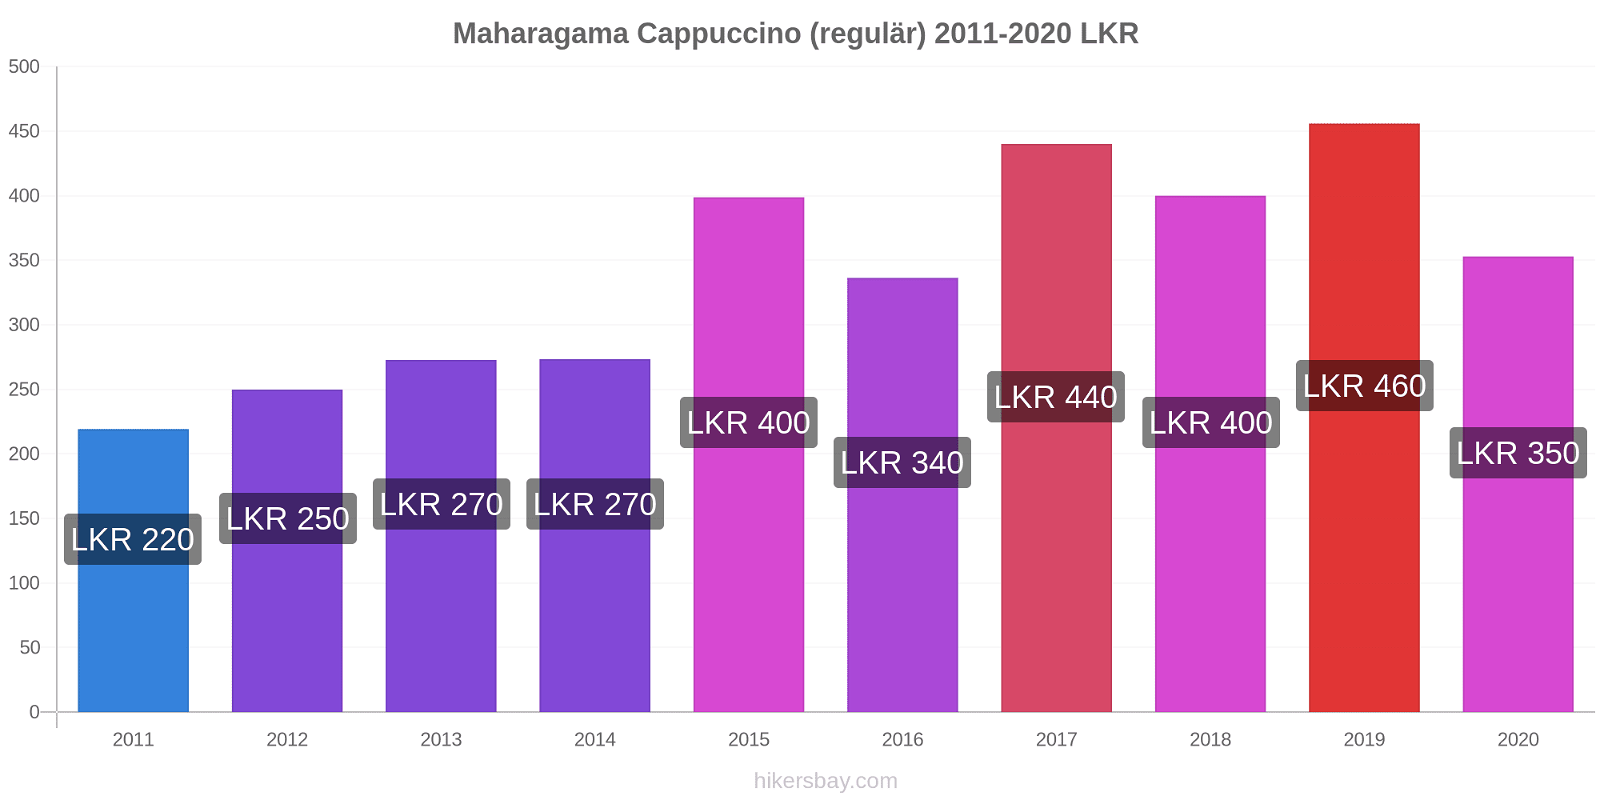 Maharagama Preisänderungen Cappuccino (regulär) hikersbay.com